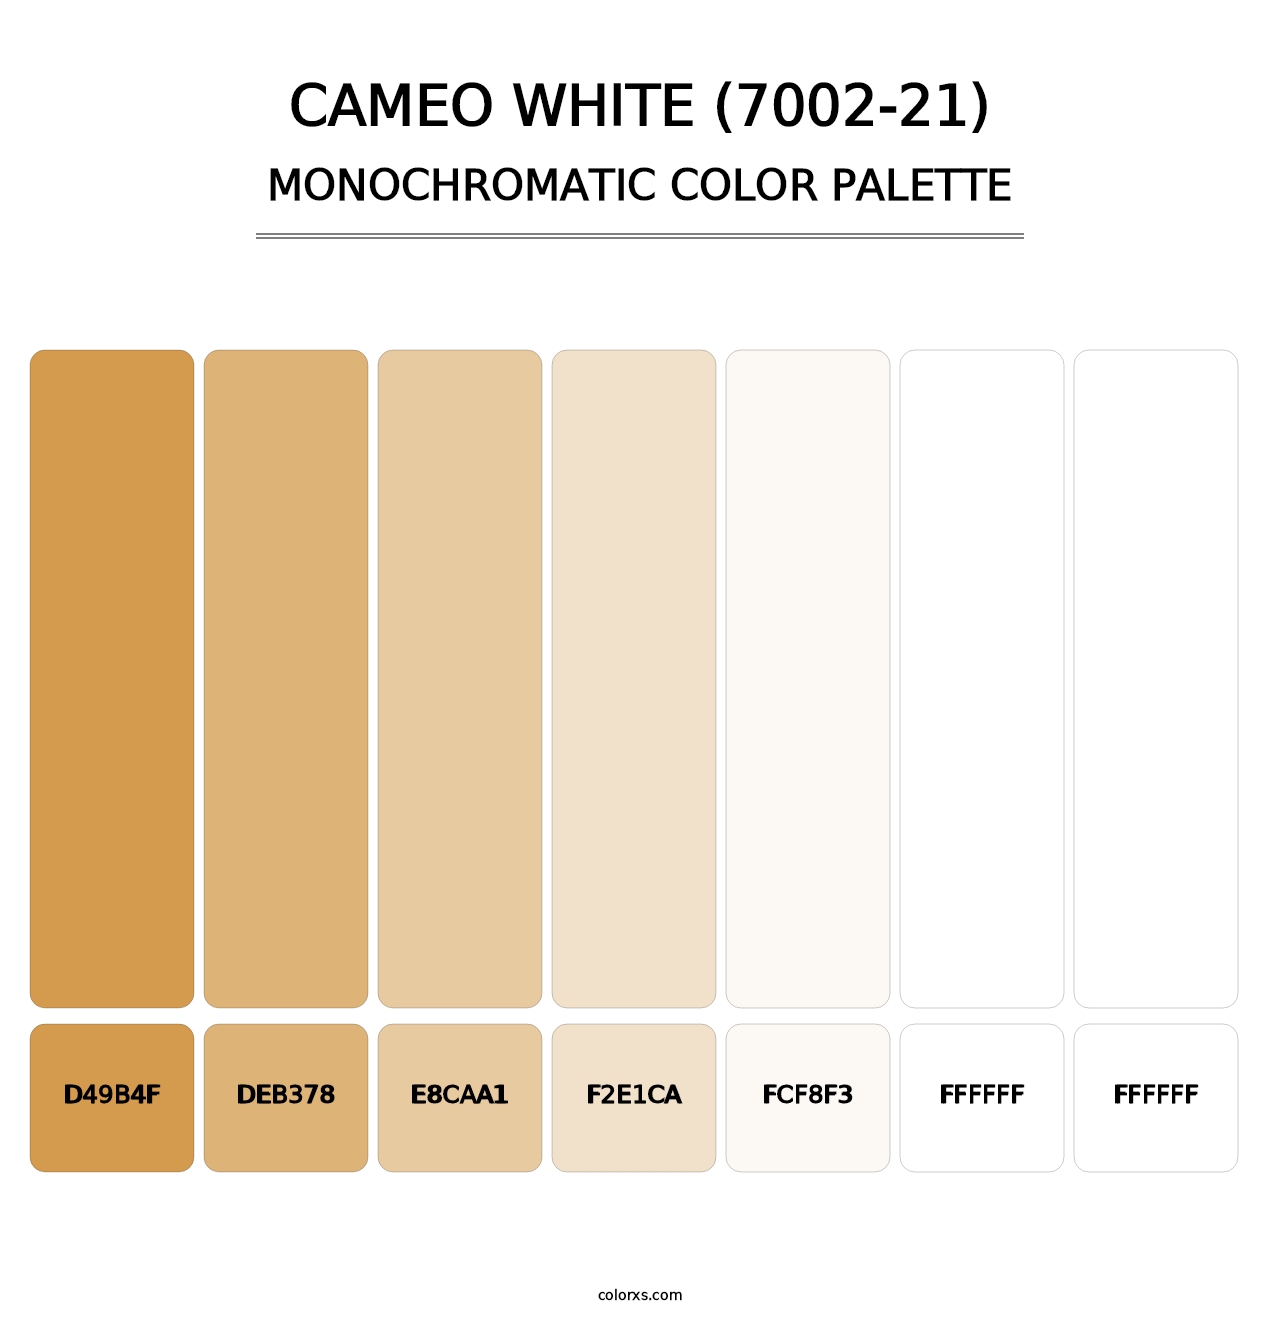 Cameo White (7002-21) - Monochromatic Color Palette